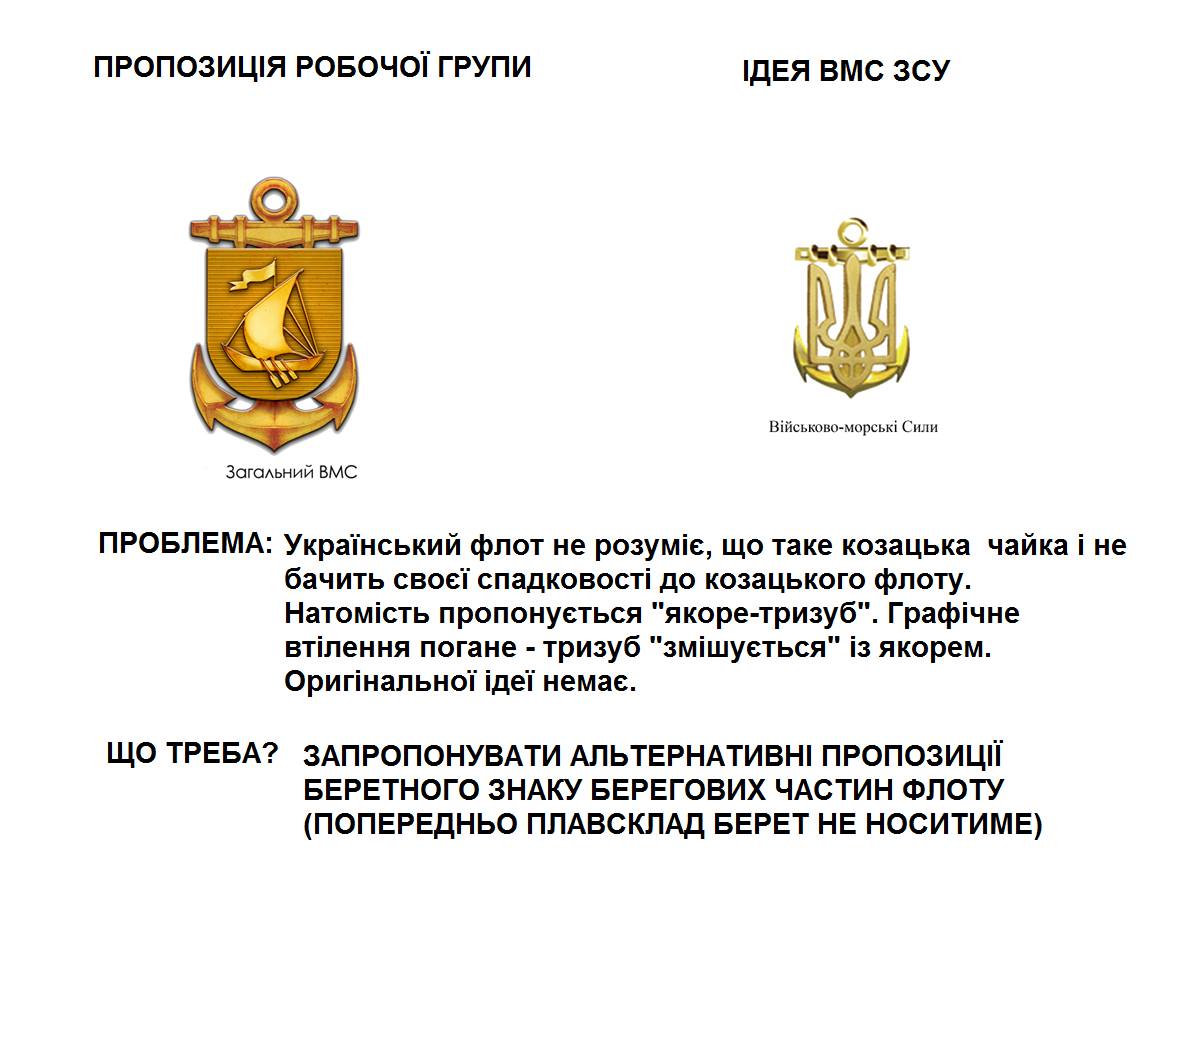 Ukrainian Military Pages Робоча група запрошує до обговорення проекту військової символіки та розроблення змін до нього